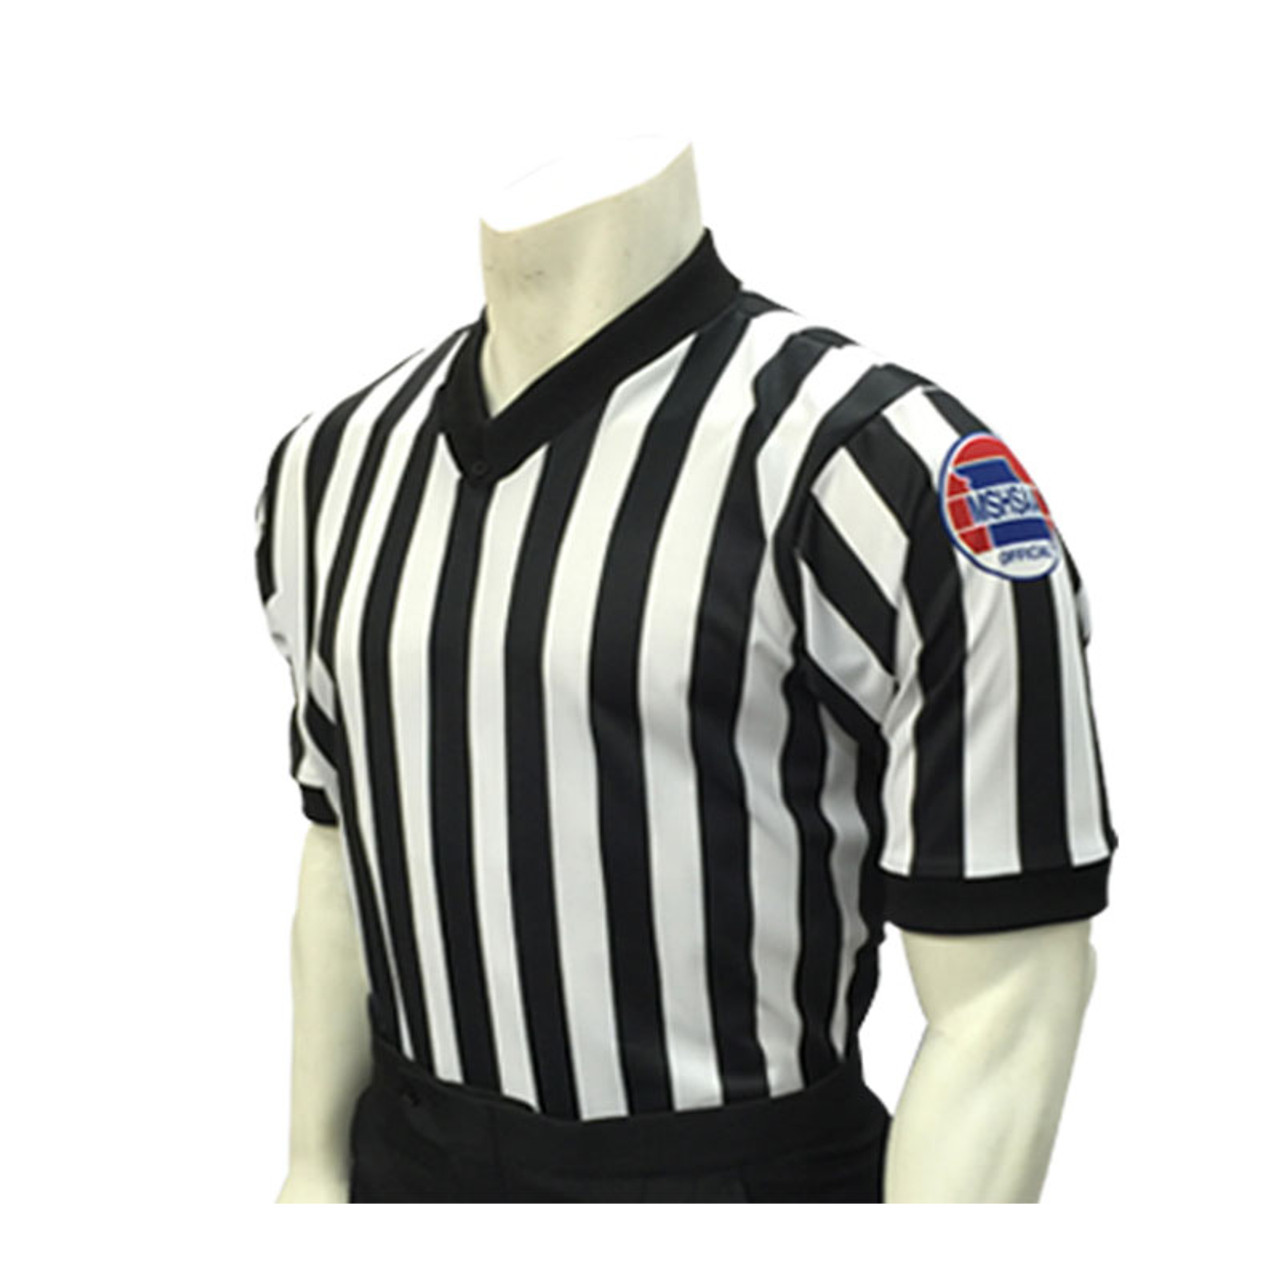 Missouri MSHSAA Men's Basketball Referee Shirt